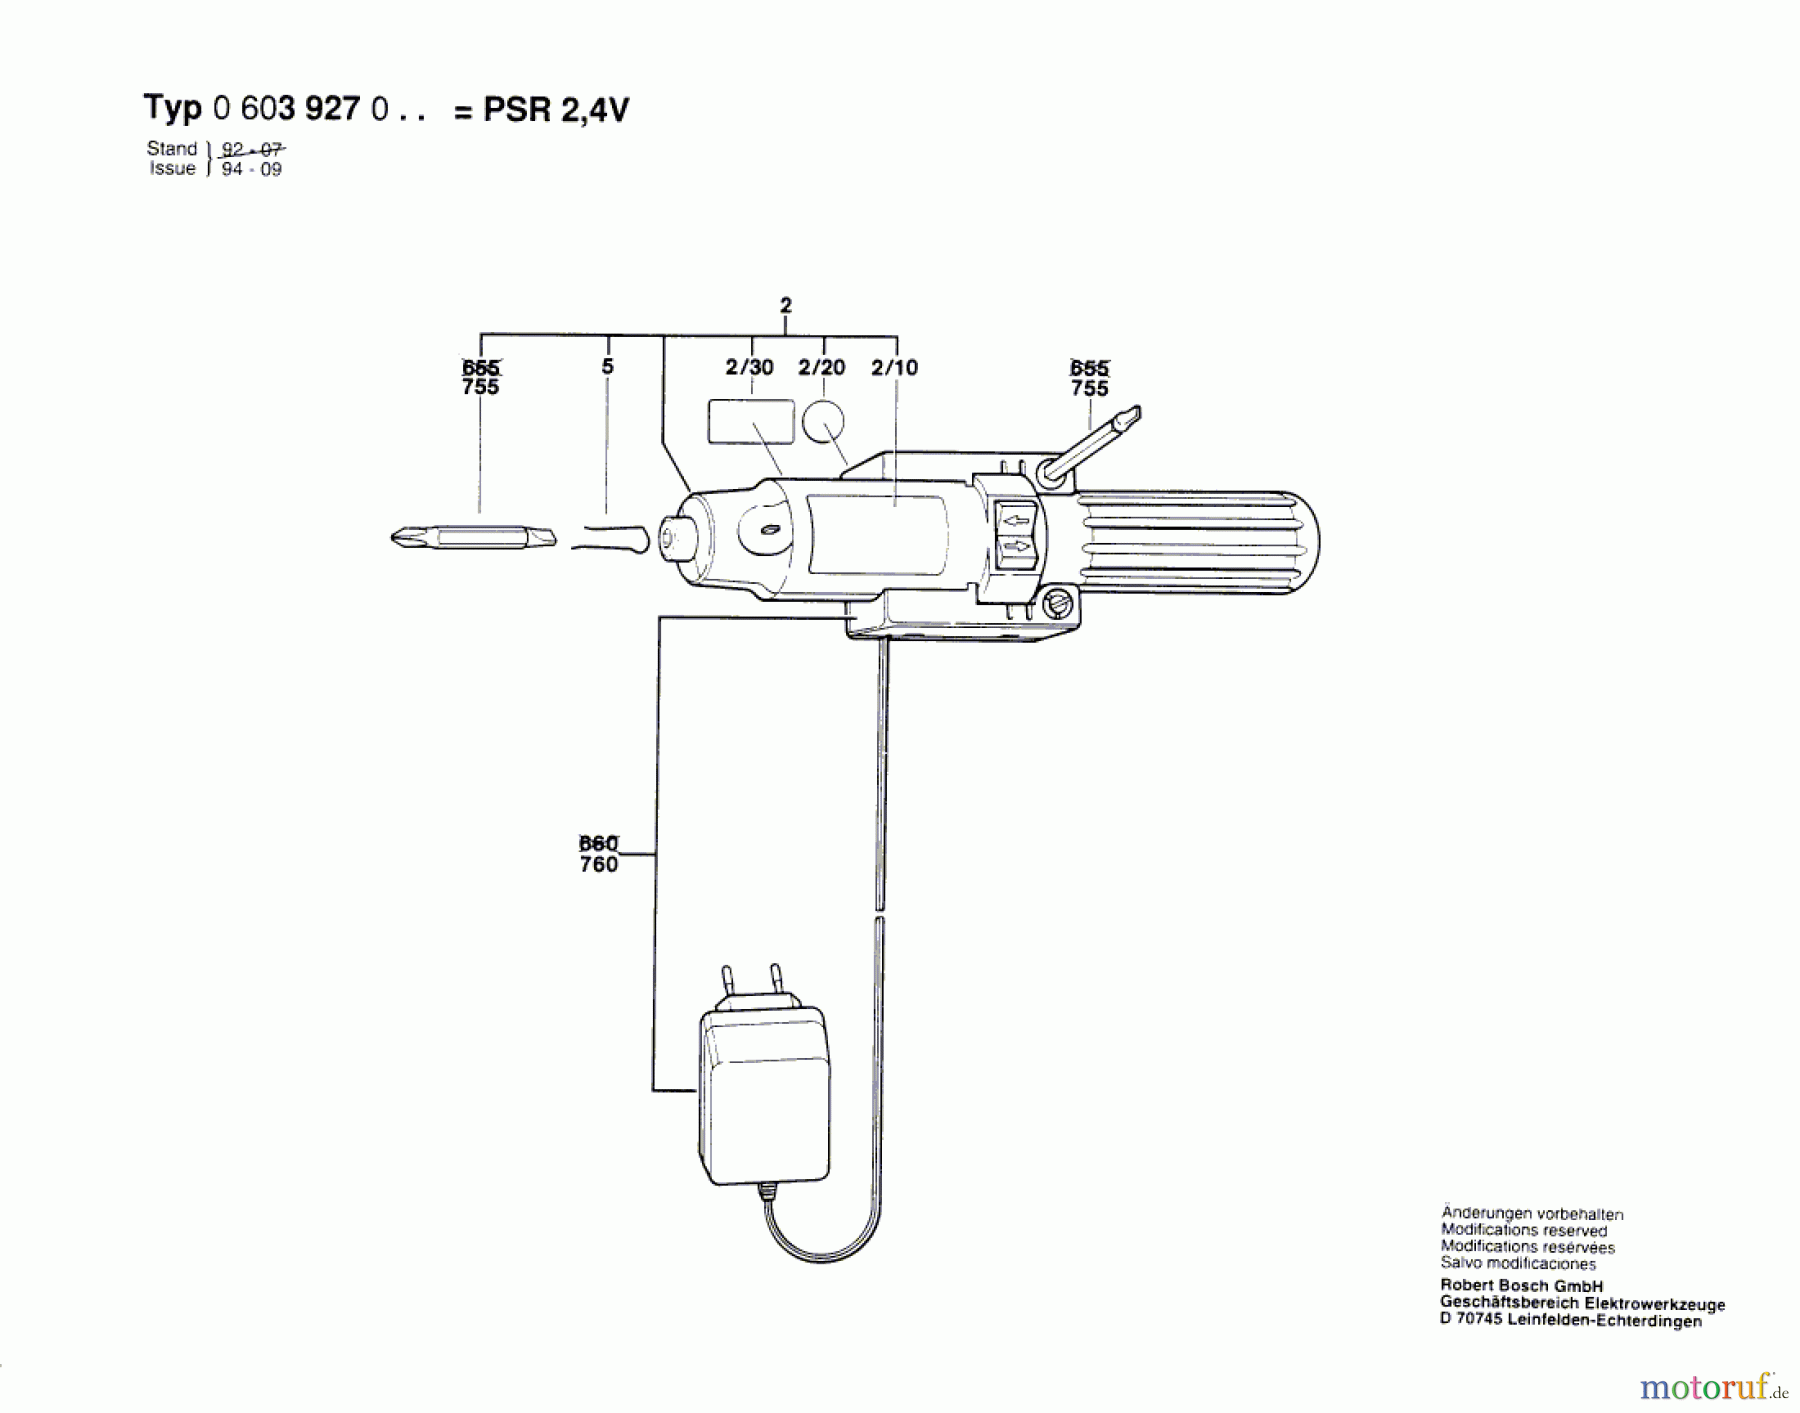  Bosch Akku Werkzeug Akku-Schrauber PSR 2,4 V Seite 1